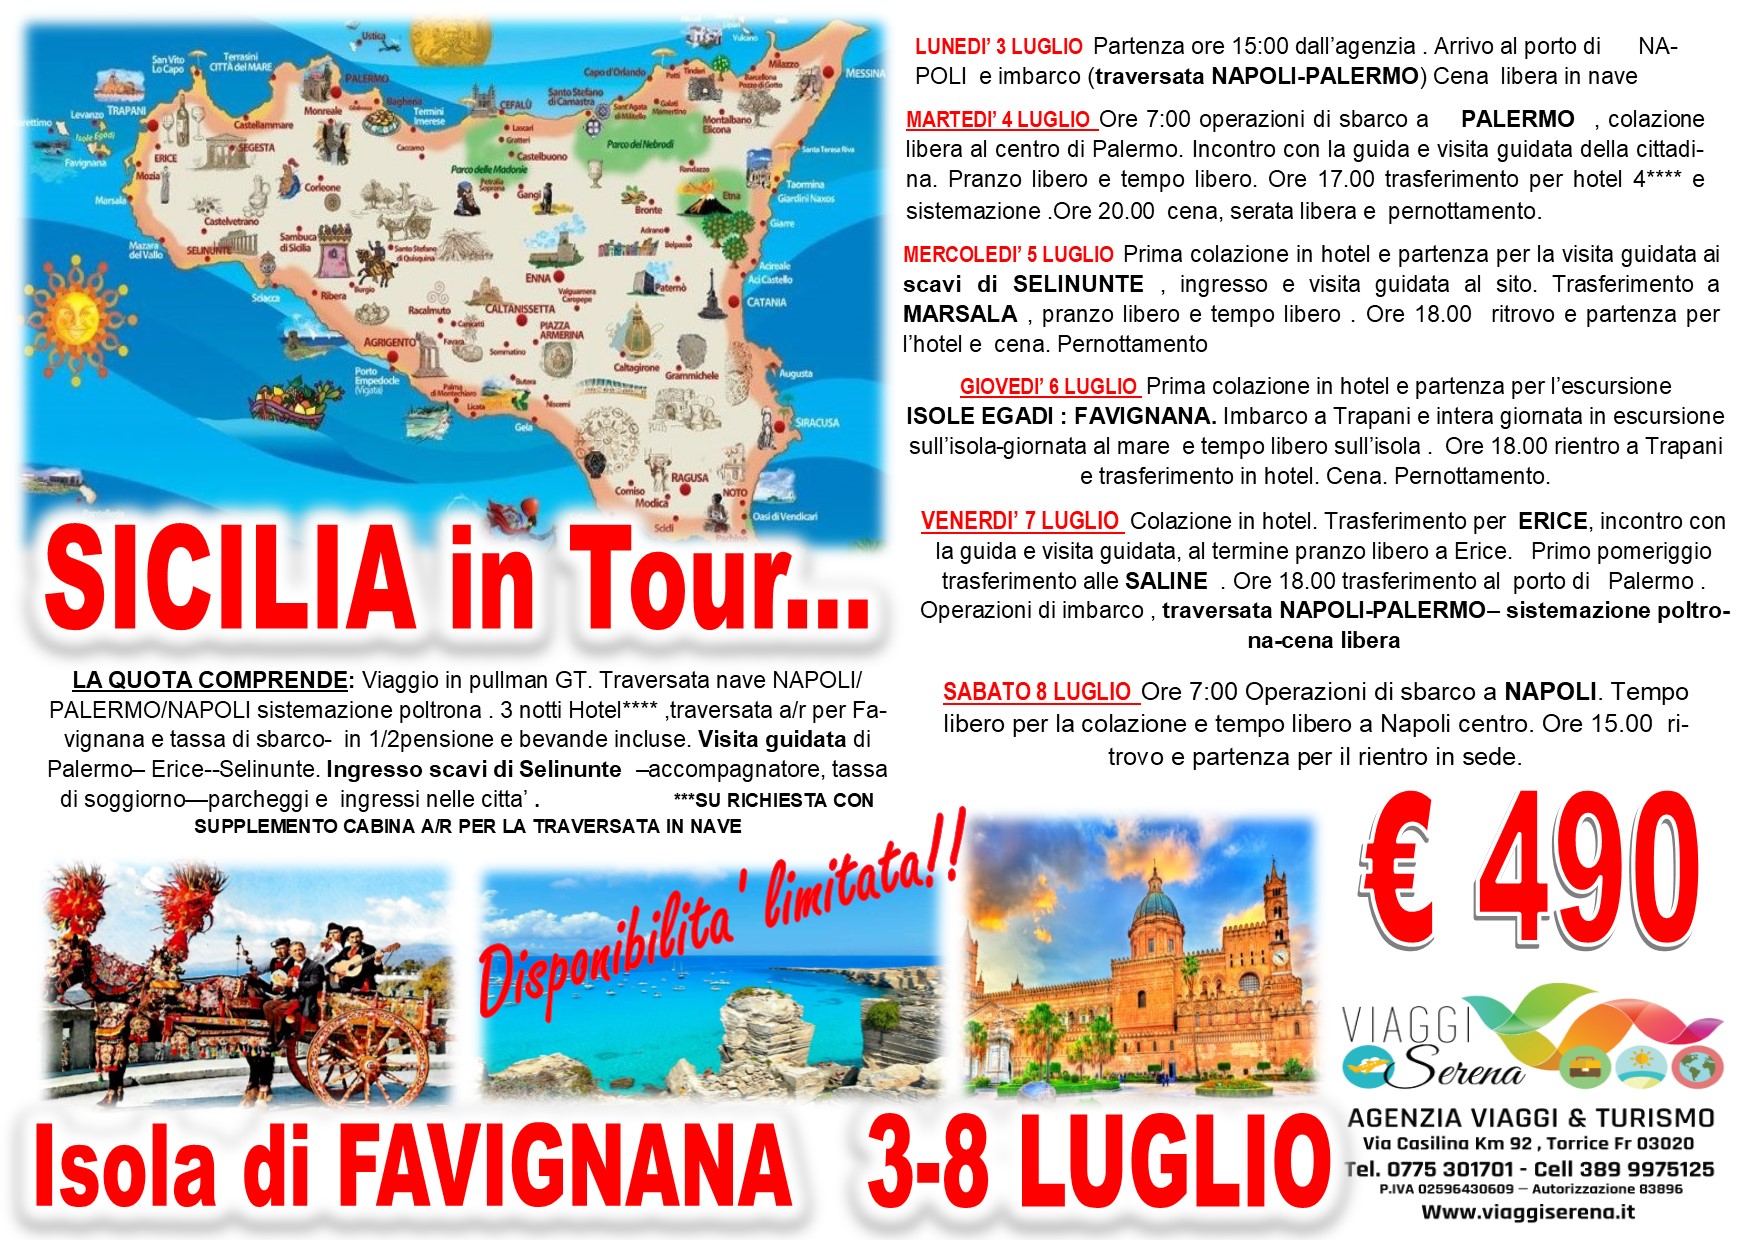 Viaggi di Gruppo: Sicilia in Tour , Palermo, Selinunte, Erice, Marsala & Favignana 3-8 Luglio €490,00